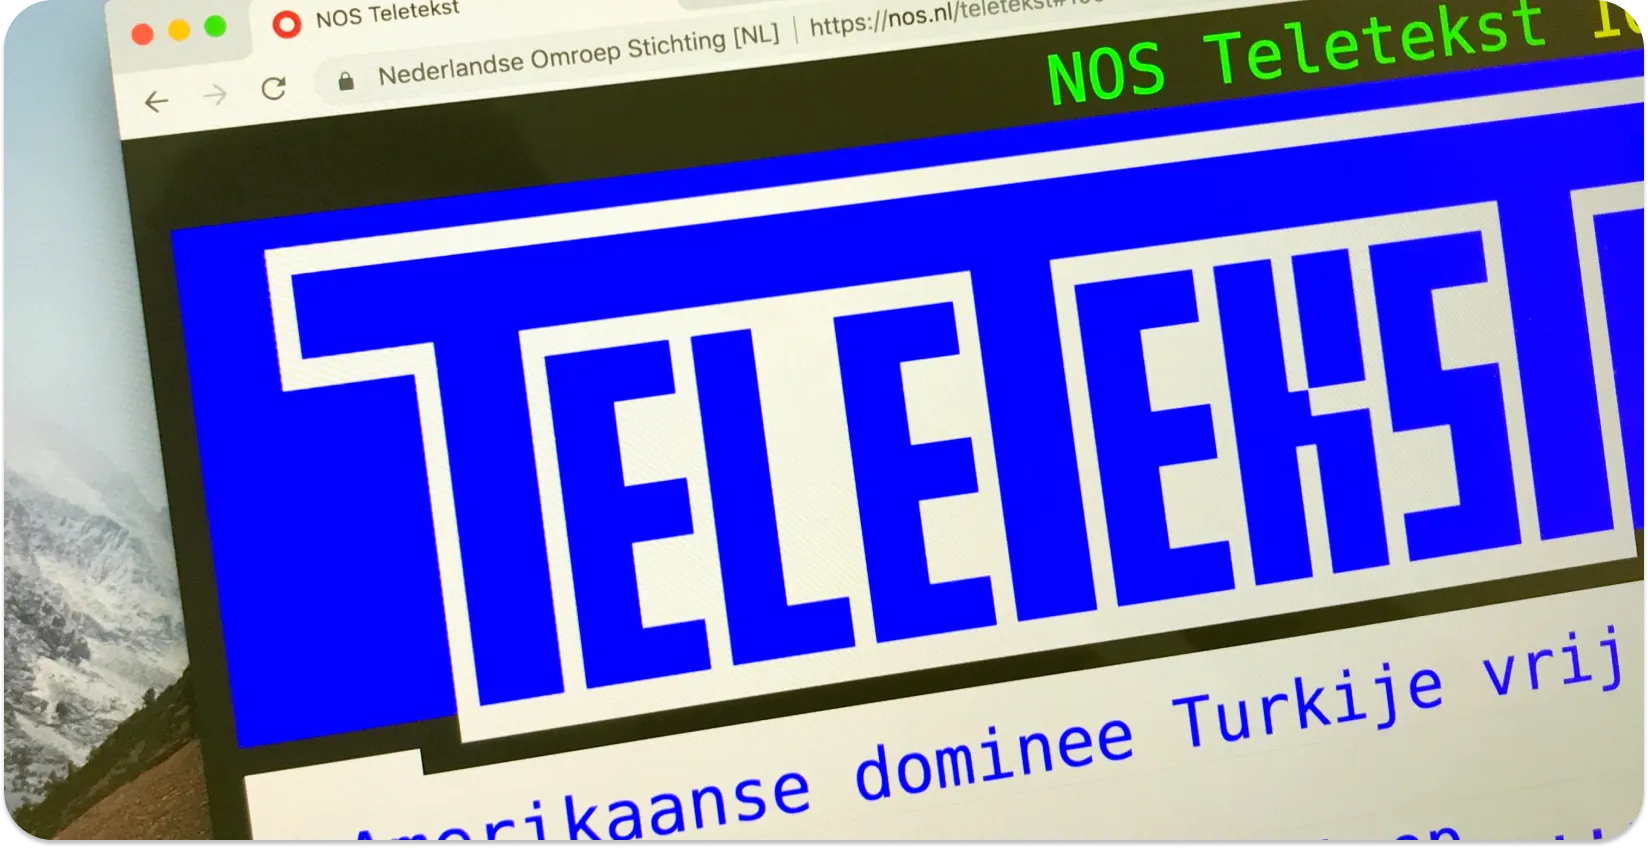 Компјутерски екран кој прикажува претстава на Телетекст со наслови на вести, прикажувајќи го телетекстовиот формат на поднасловот.